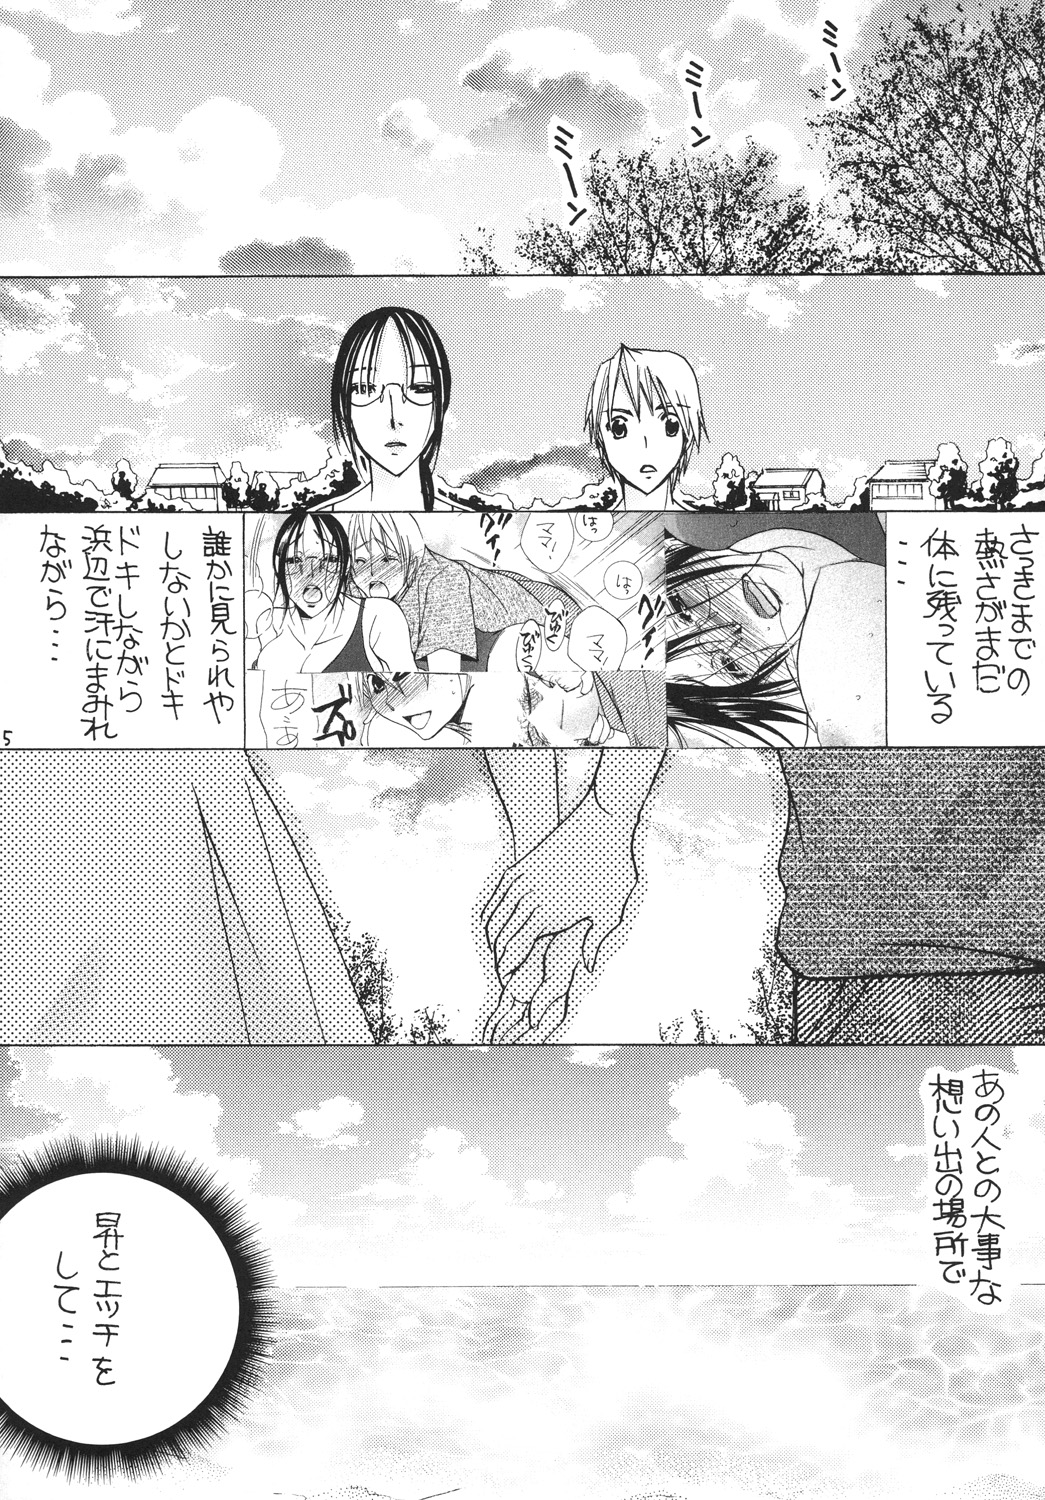 [M.MACABRE (Nyanko MIC)] Tsukutsuku Haha 11 [Digital] page 4 full